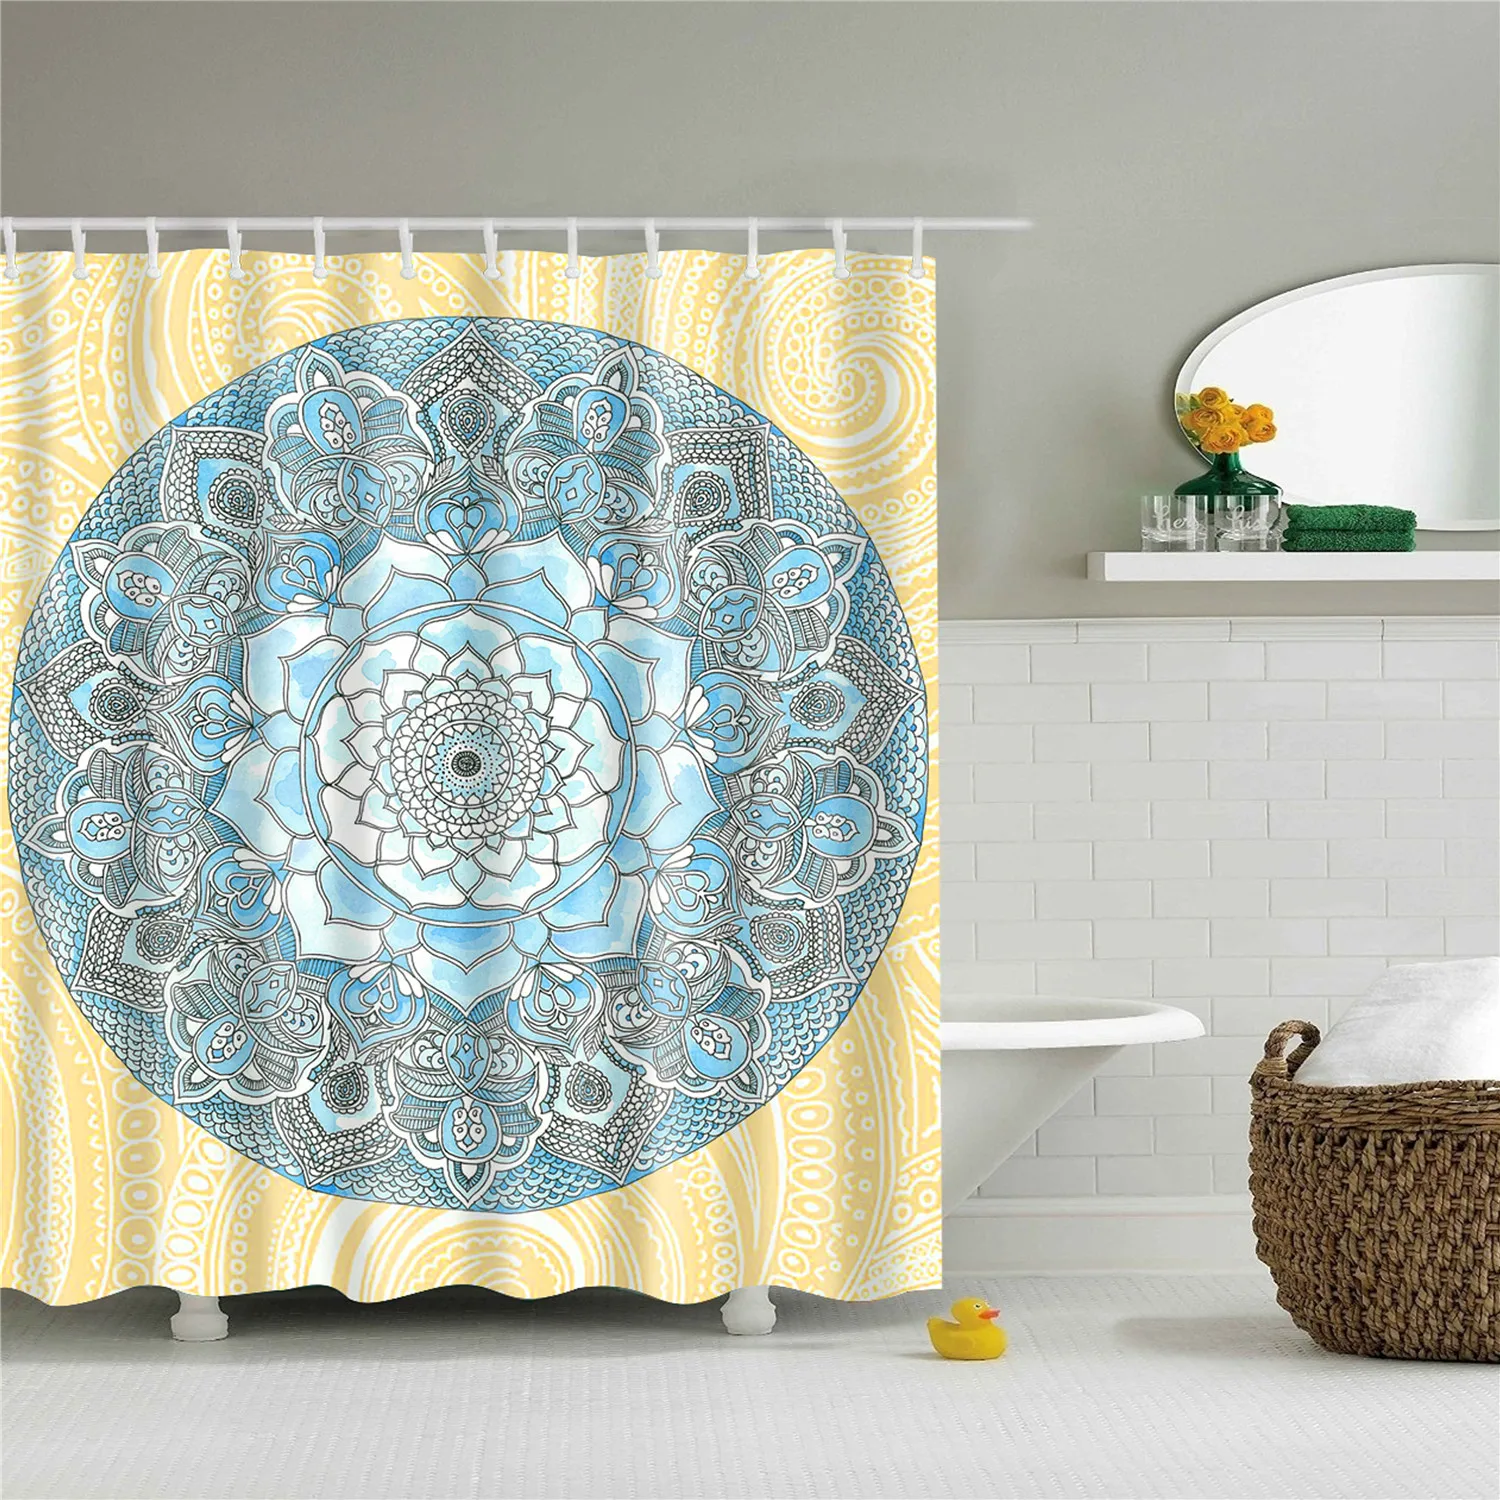 180x200 см индийский Bodhisattva 3D занавеска для ванной Водонепроницаемый полиэстер ткань затемненная Мандала занавеска для душа для ванной комнаты cortina - Цвет: TZ161202